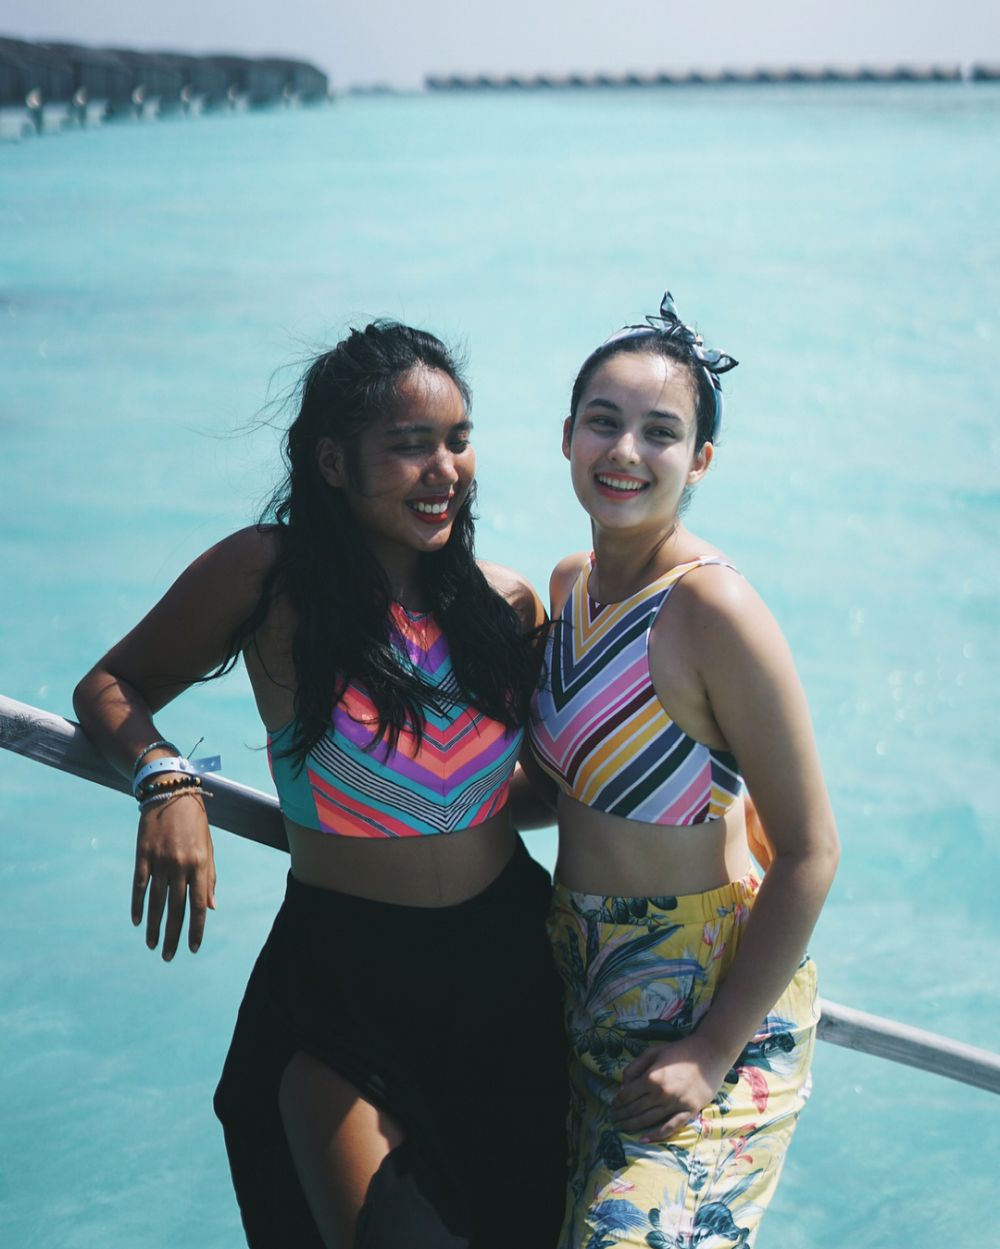 Tanpa tampil seksi, begini 10 potret Chelsea Islan liburan di Maldives